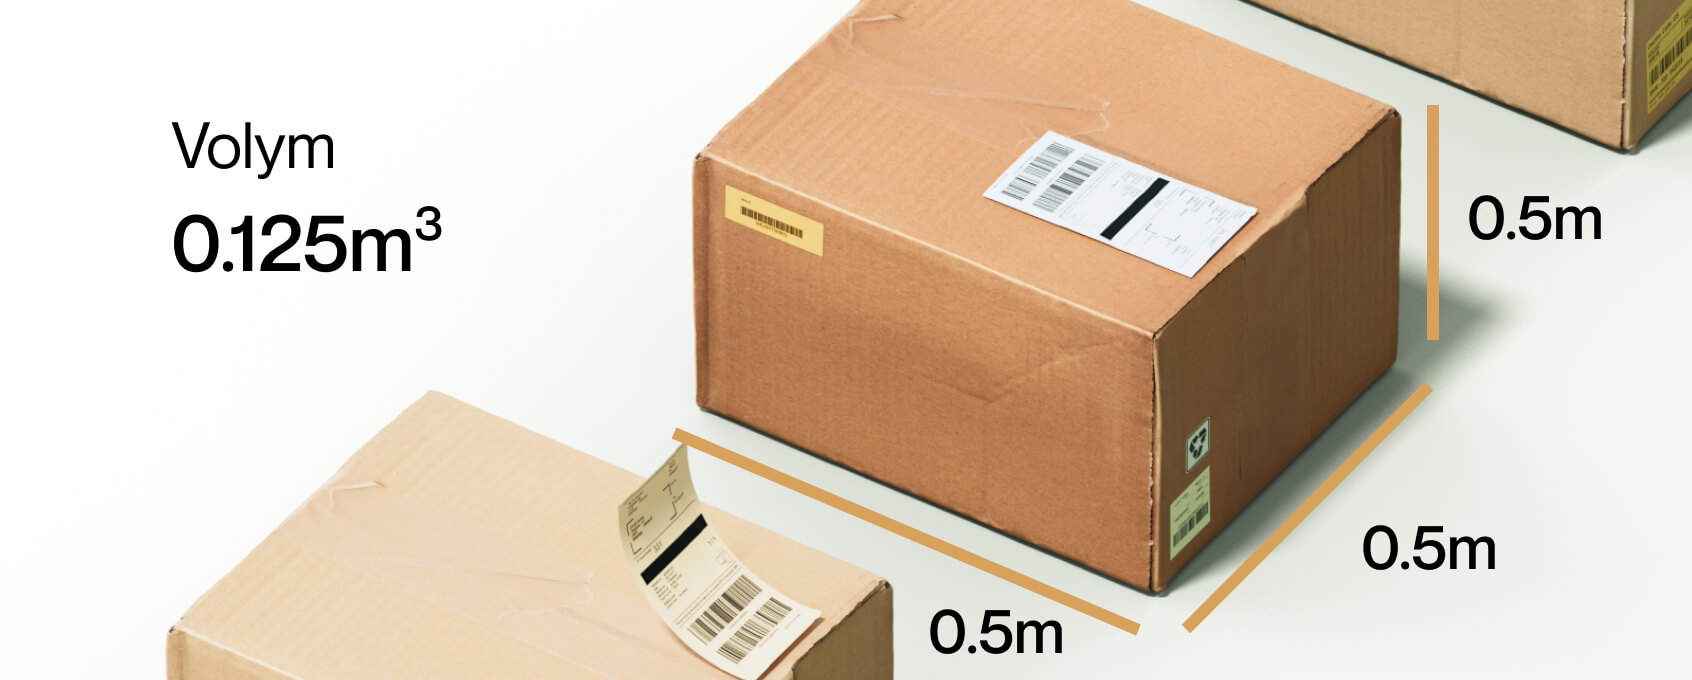 exempel på volymvikt för ett paket som skickas med fraktbokningstjänsten Sendify 